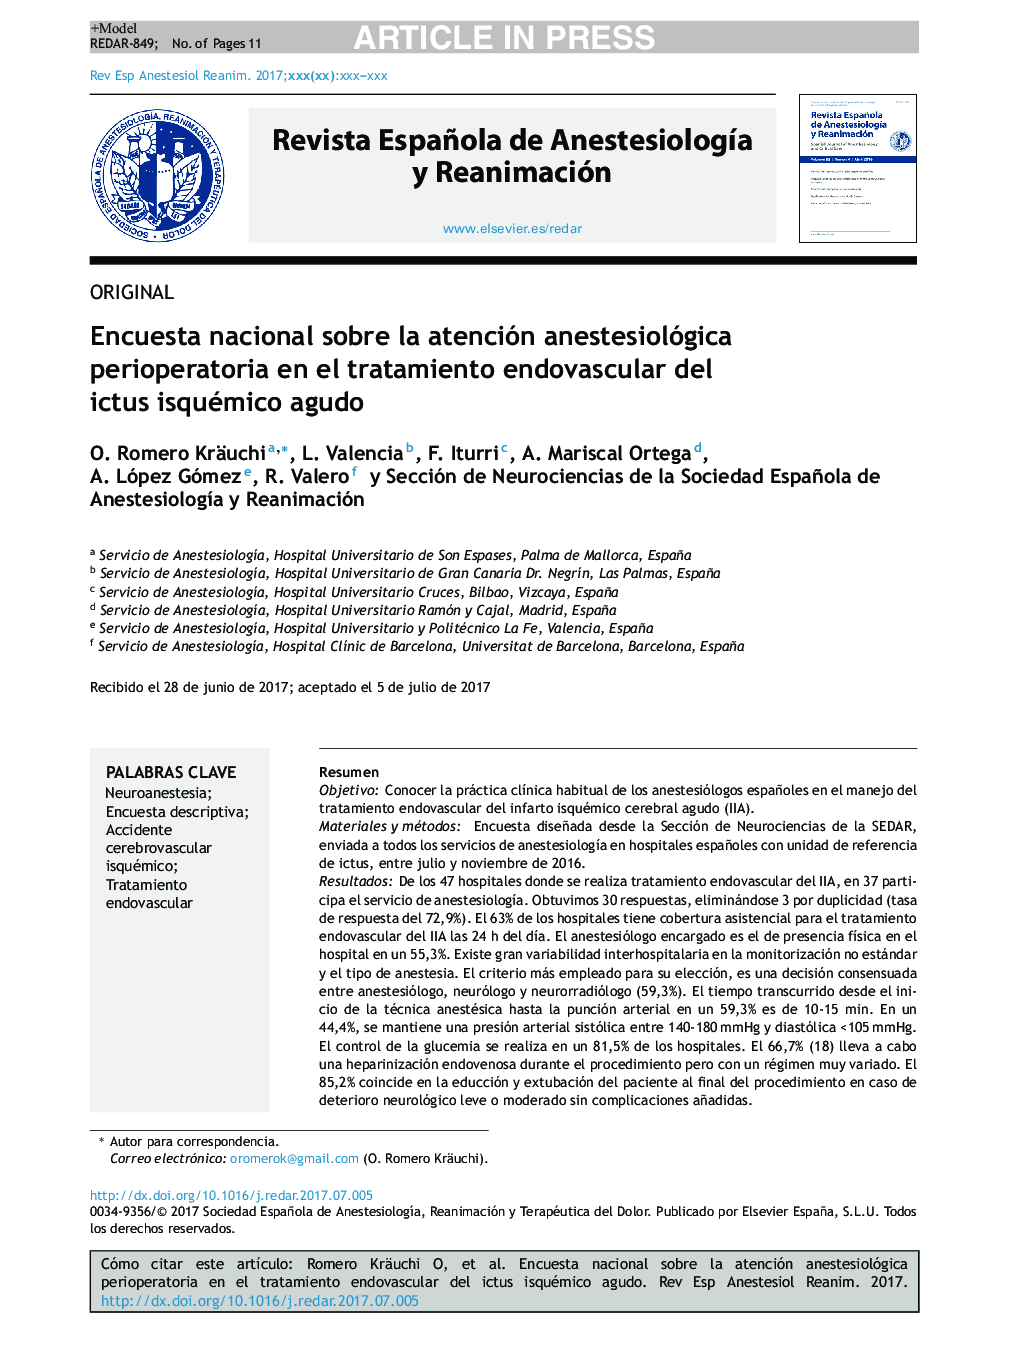 Encuesta nacional sobre la atención anestesiológica perioperatoria en el tratamiento endovascular del ictus isquémico agudo